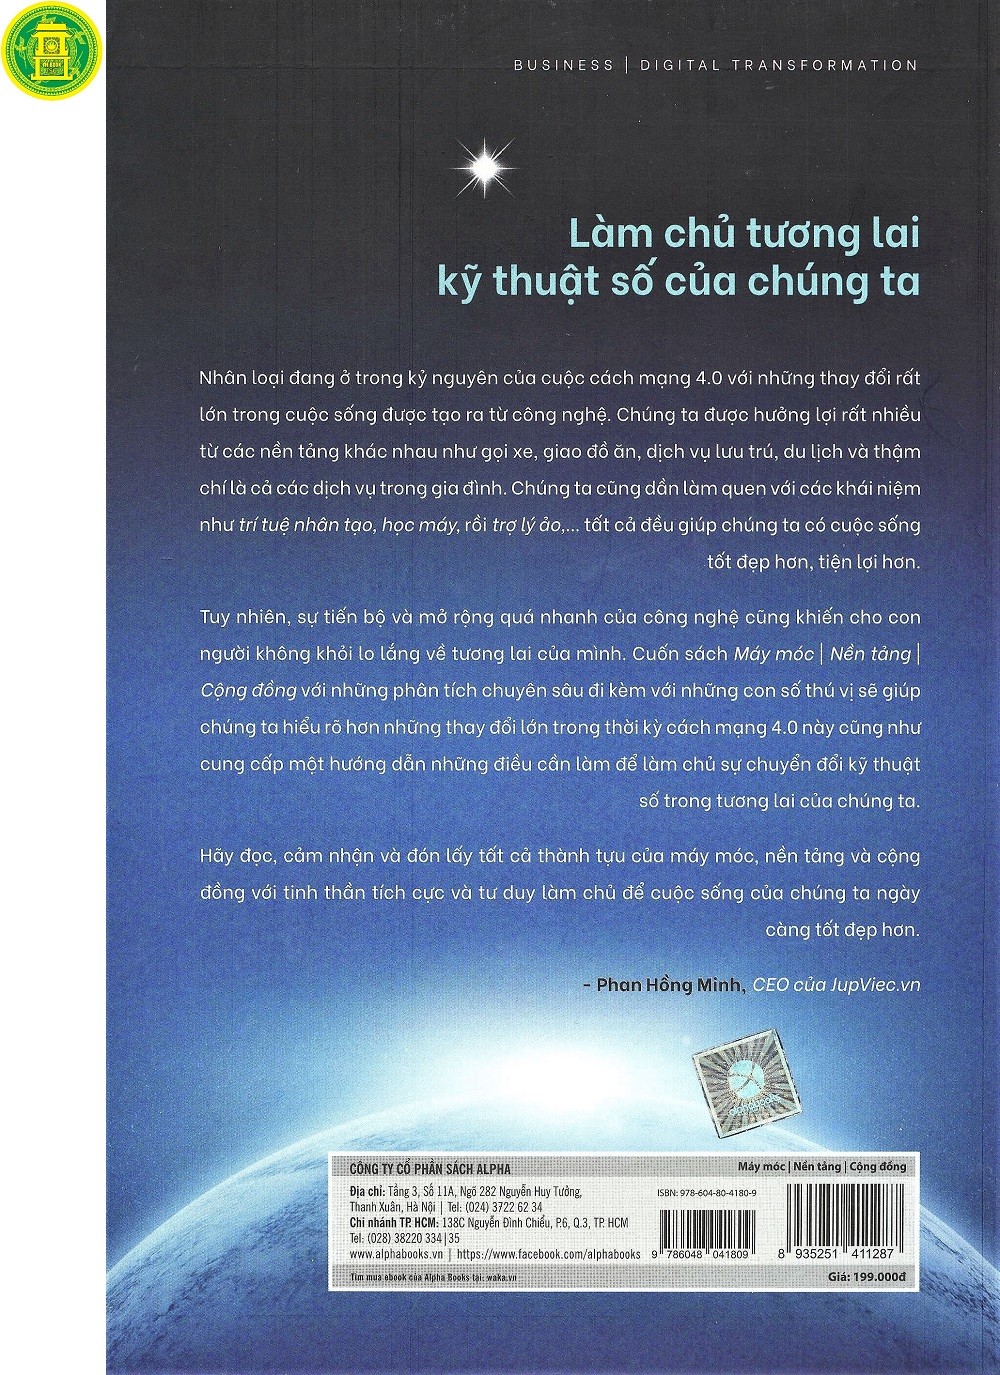 Máy Móc - Nền Tảng - Cộng Đồng PDF